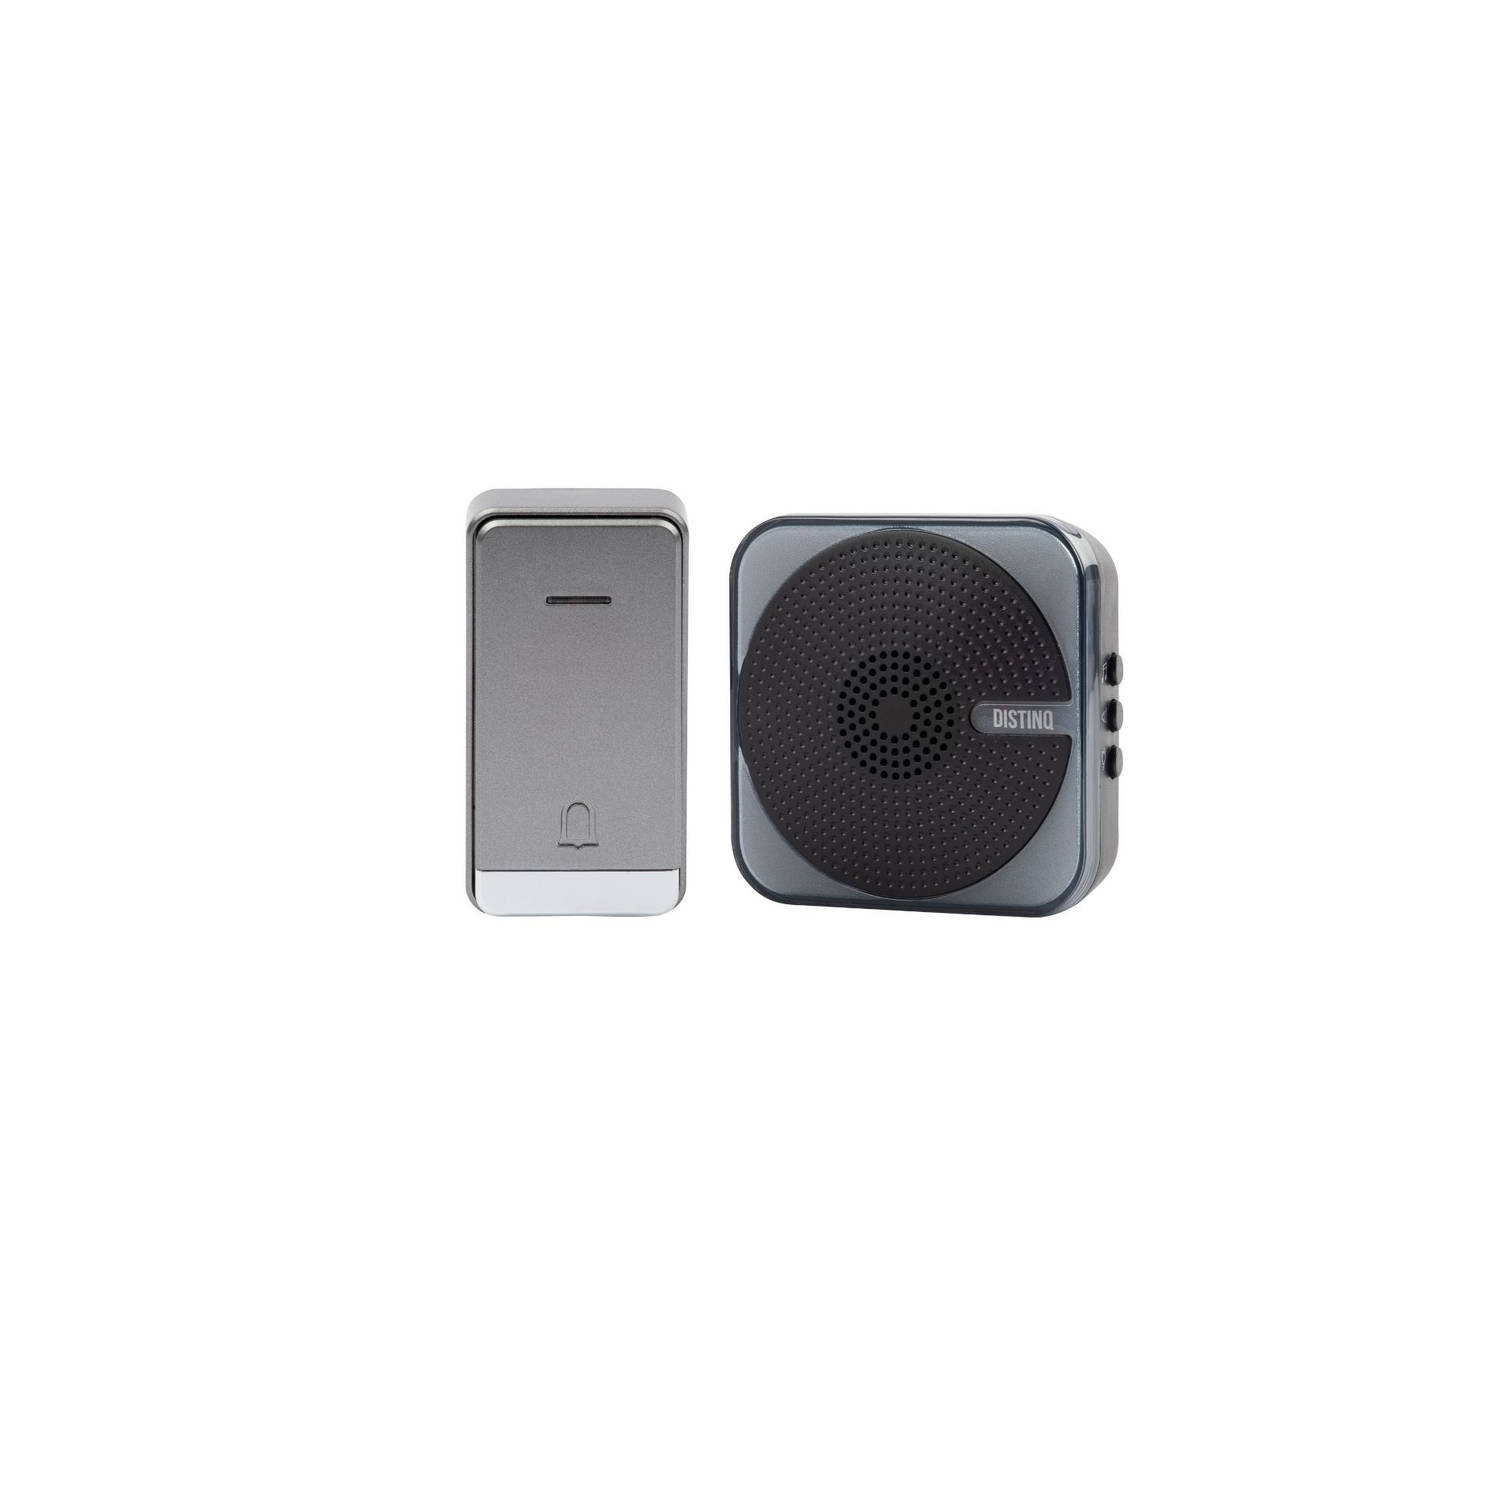 DistinQ draadloze deurbel - 1 plug & play speaker - led verlichting voor visuele ondersteuning zwart